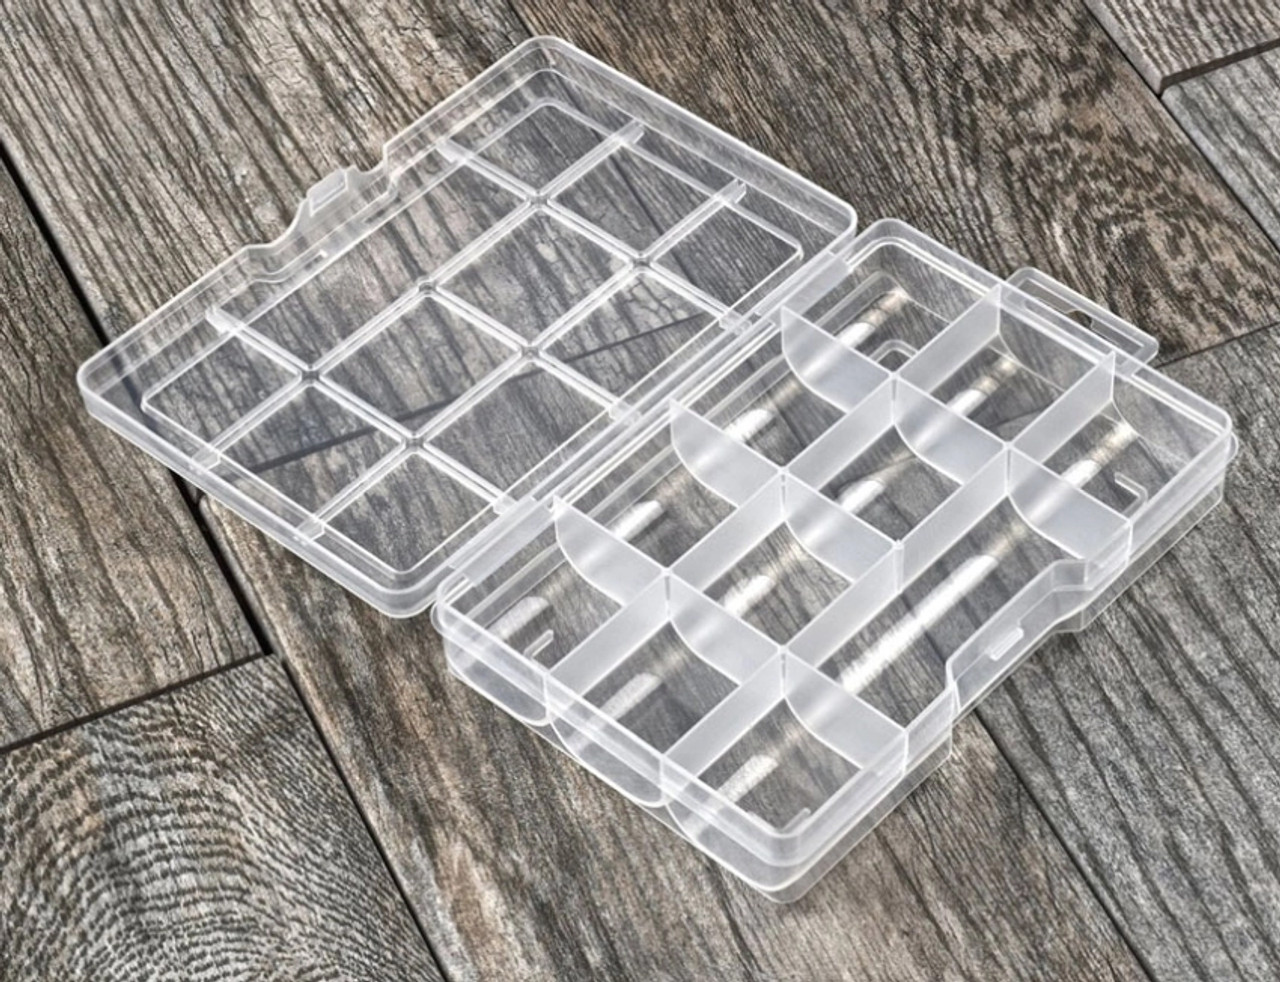 7 Compartment Plastic Storage Box